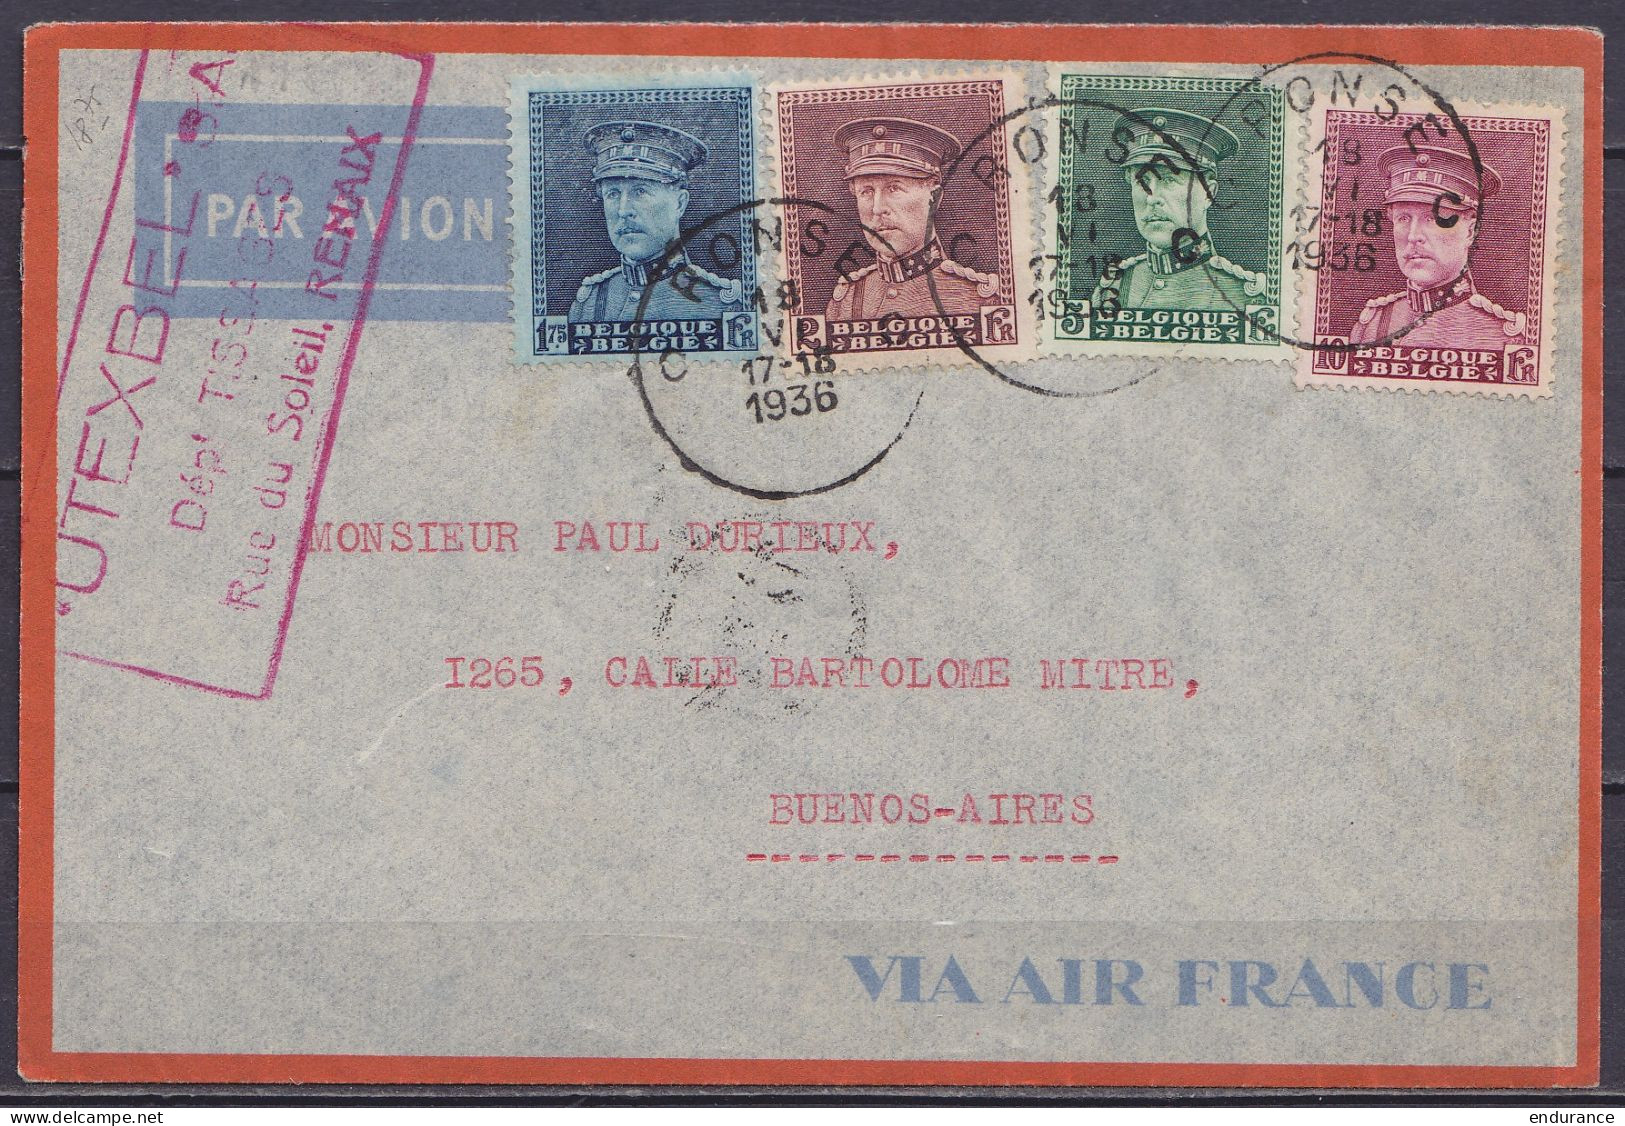 L. Par Avion Affr. N°320+321+323+324 Càd RONSE C /18 VI 1936 Pour BUENOS AIRES Argentine / Enveloppe "VIA AIR France" (a - 1931-1934 Kepi